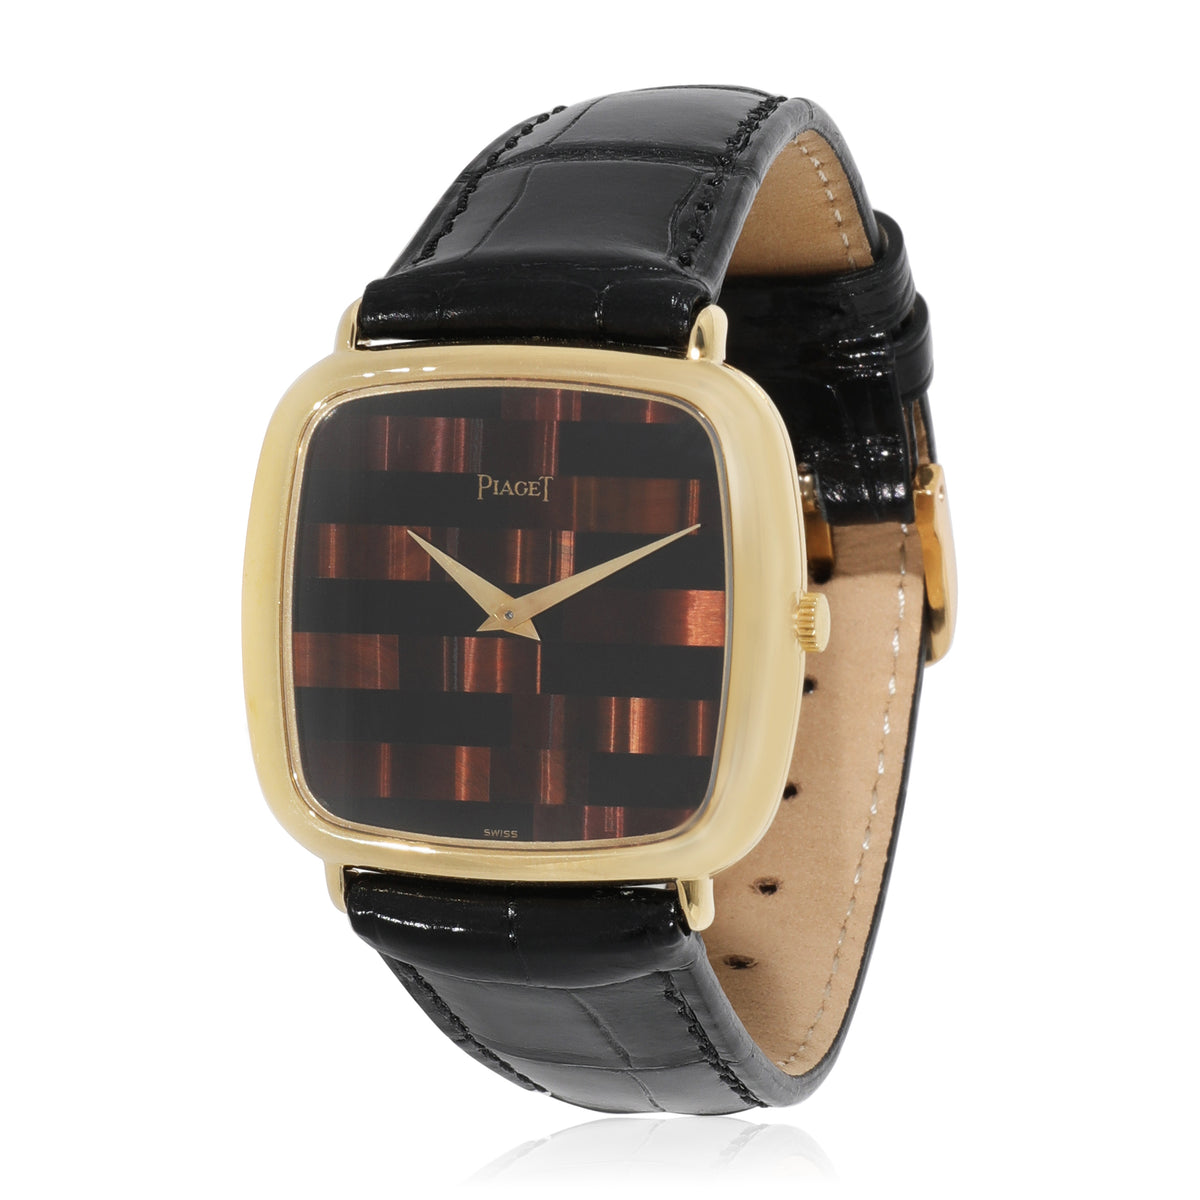 Piaget Classique 97722 Men's Watch in 18kt Yellow Gold